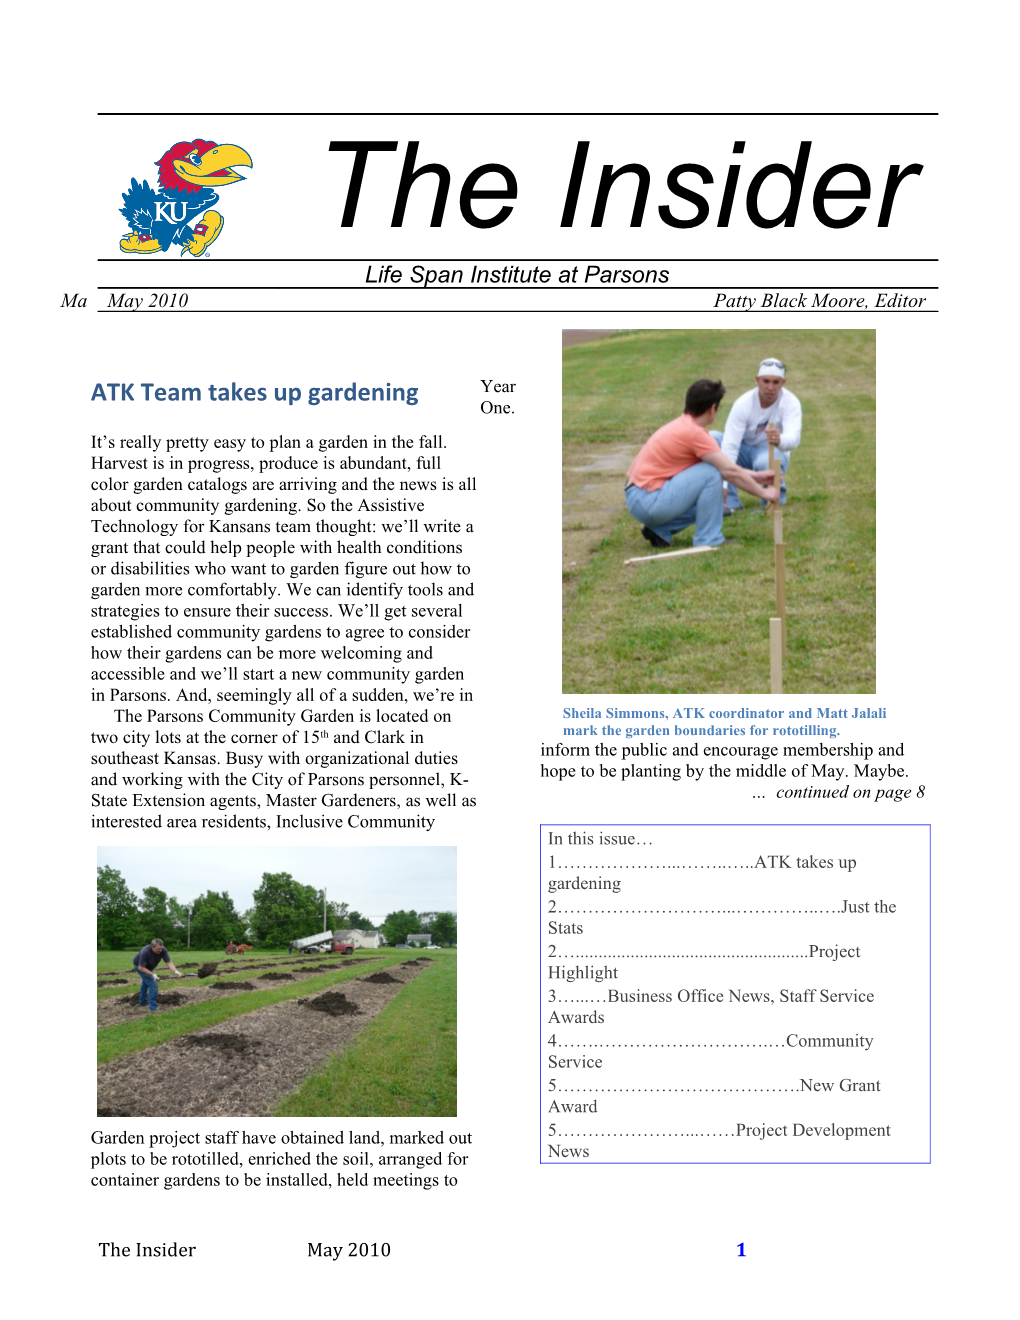 ATK Team Takes up Gardening